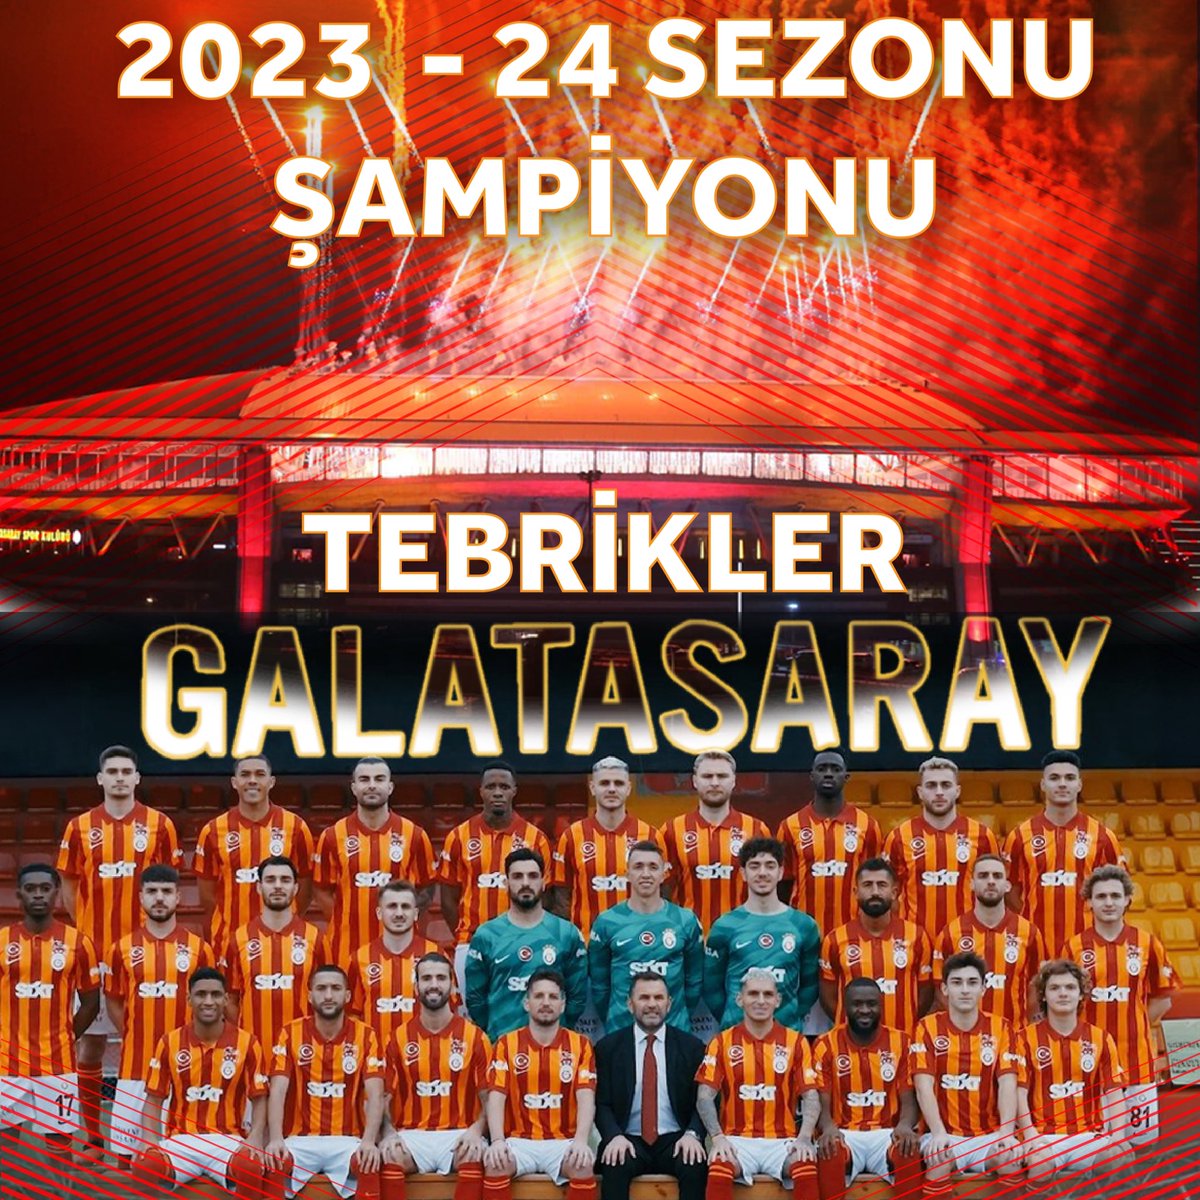 Tebrikler #Galatasaray 🎉🏆 2023-2024 Sezonu Süper Lig Şampiyonu olan @GalatasaraySK’yı tebrik ediyorum.